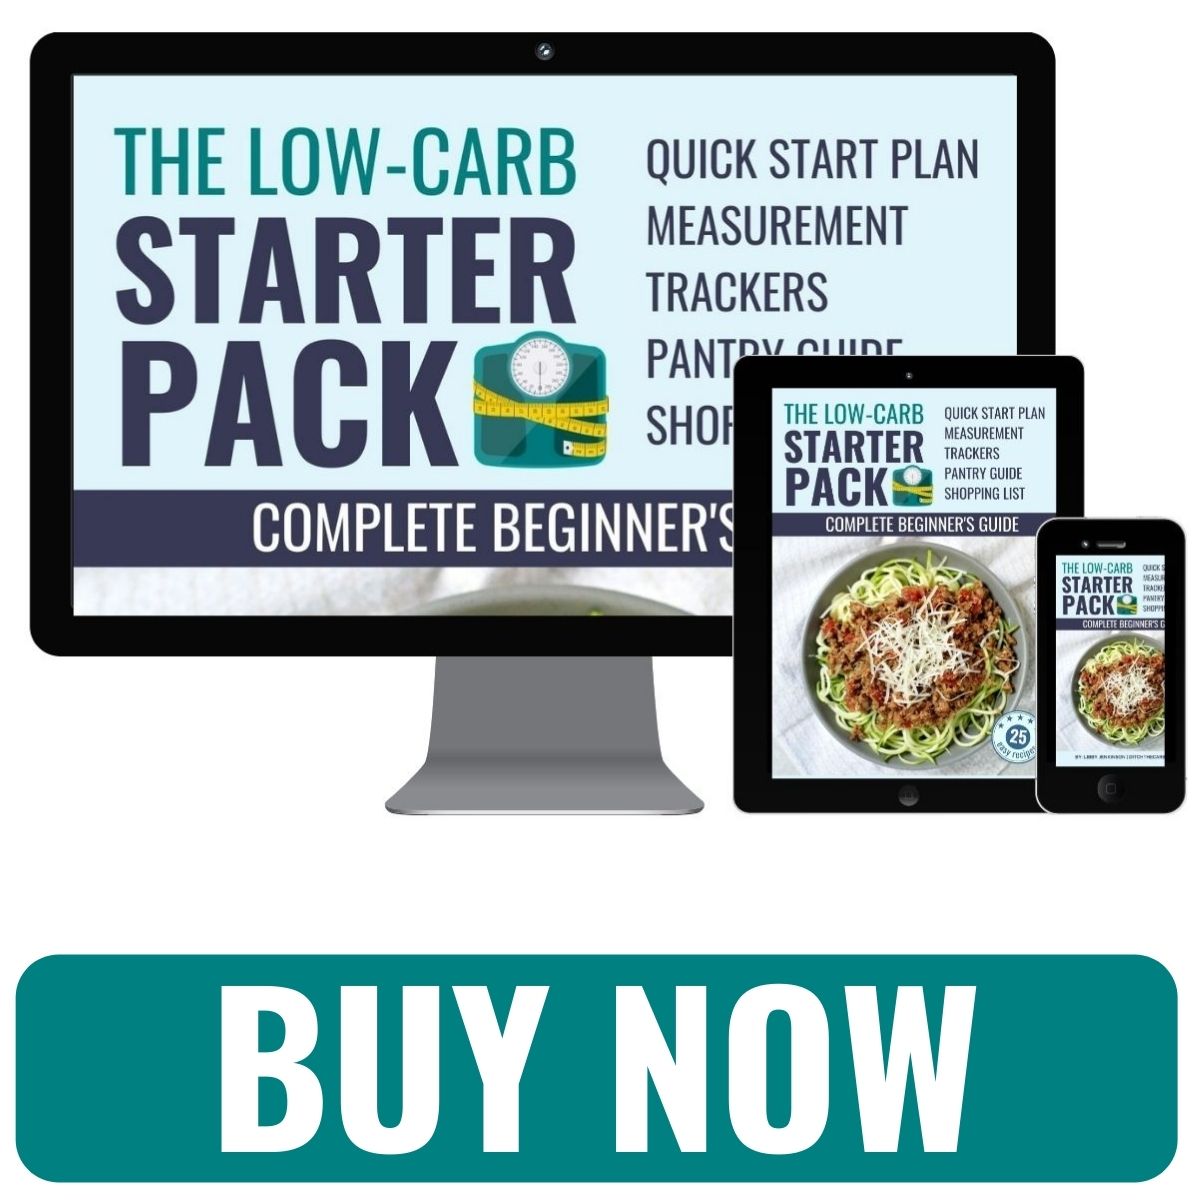 mockups of low-carb keto starter pack